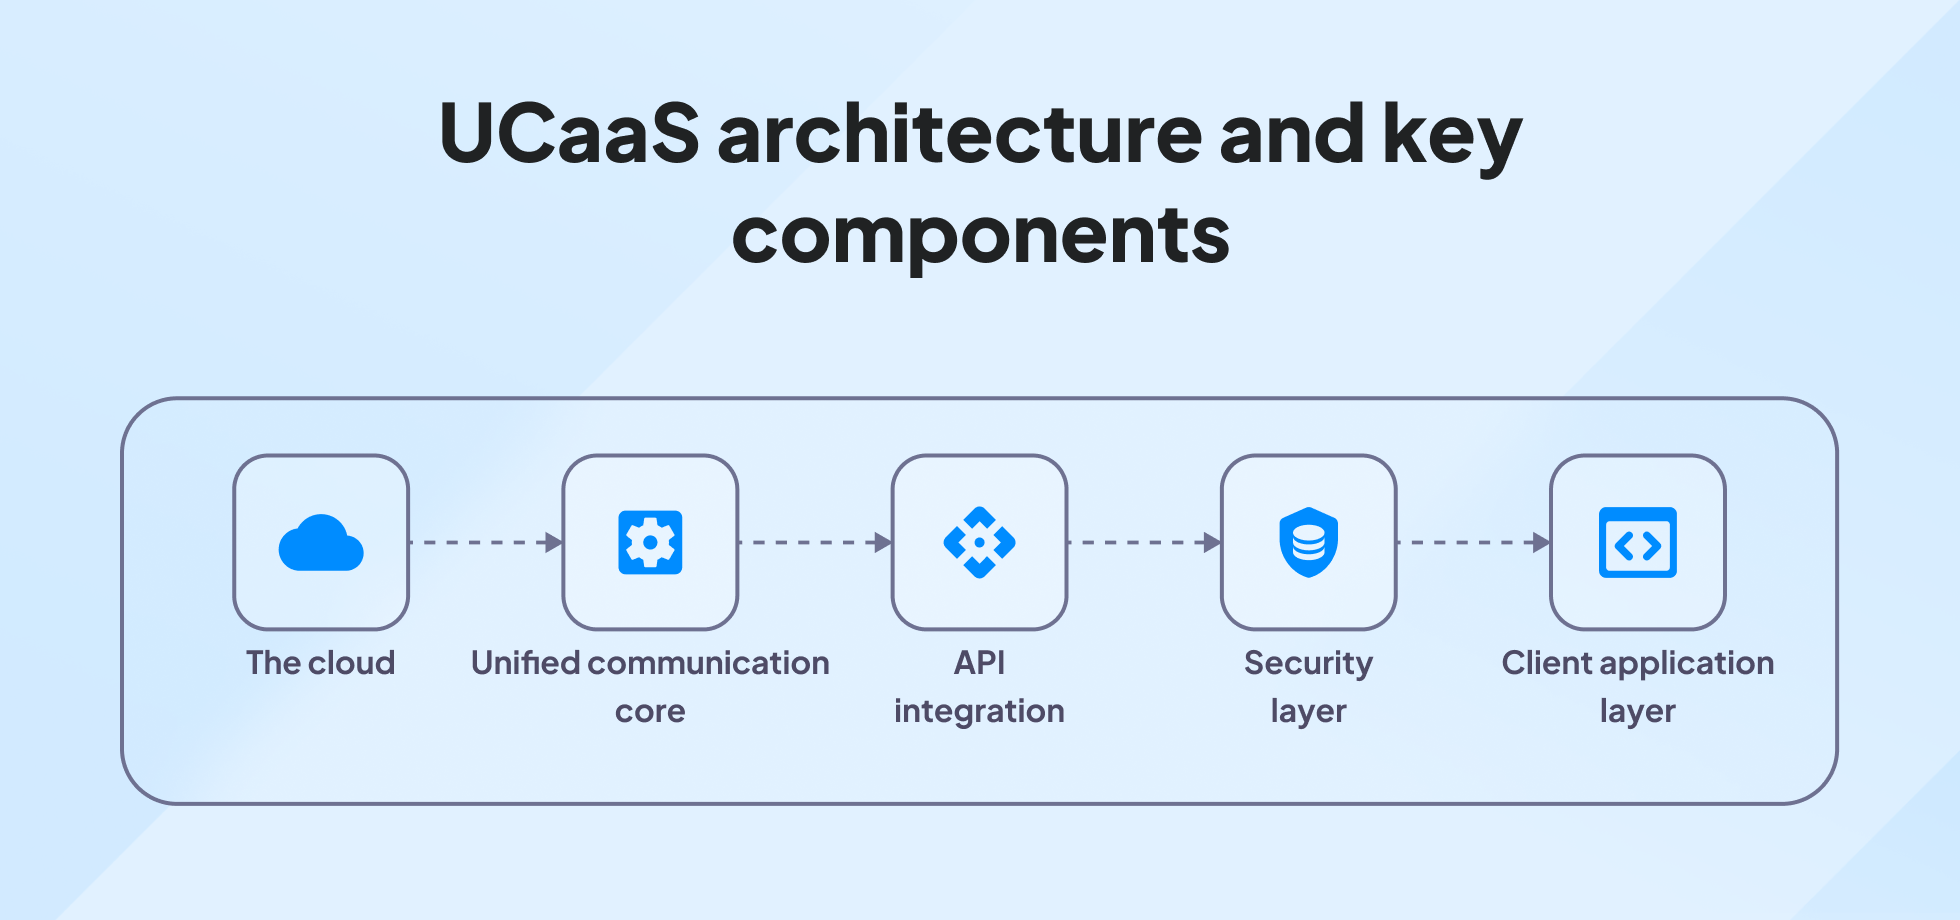 UCaaS architecture wireframing schematics